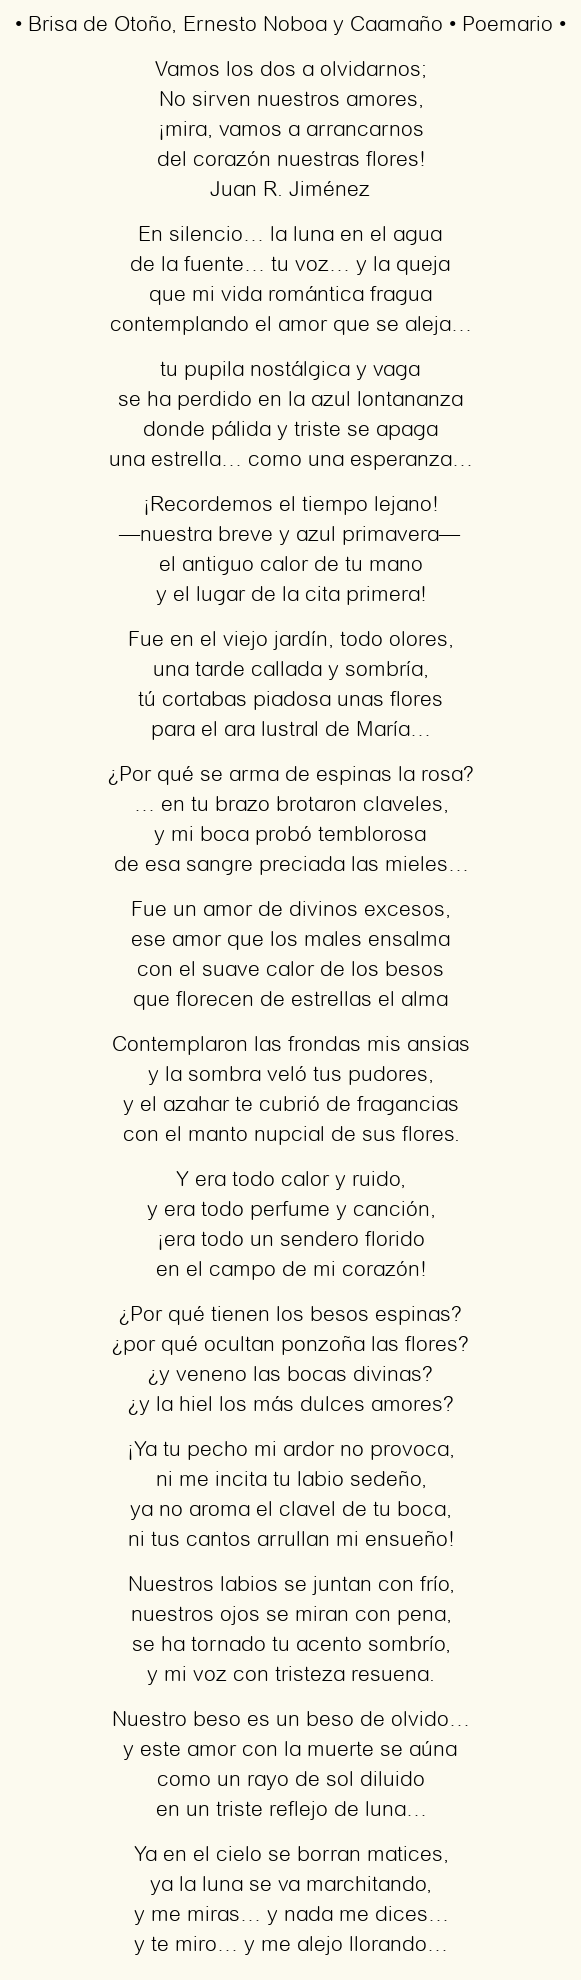 Imagen con el poema Brisa de Otoño, por Ernesto Noboa y Caamaño